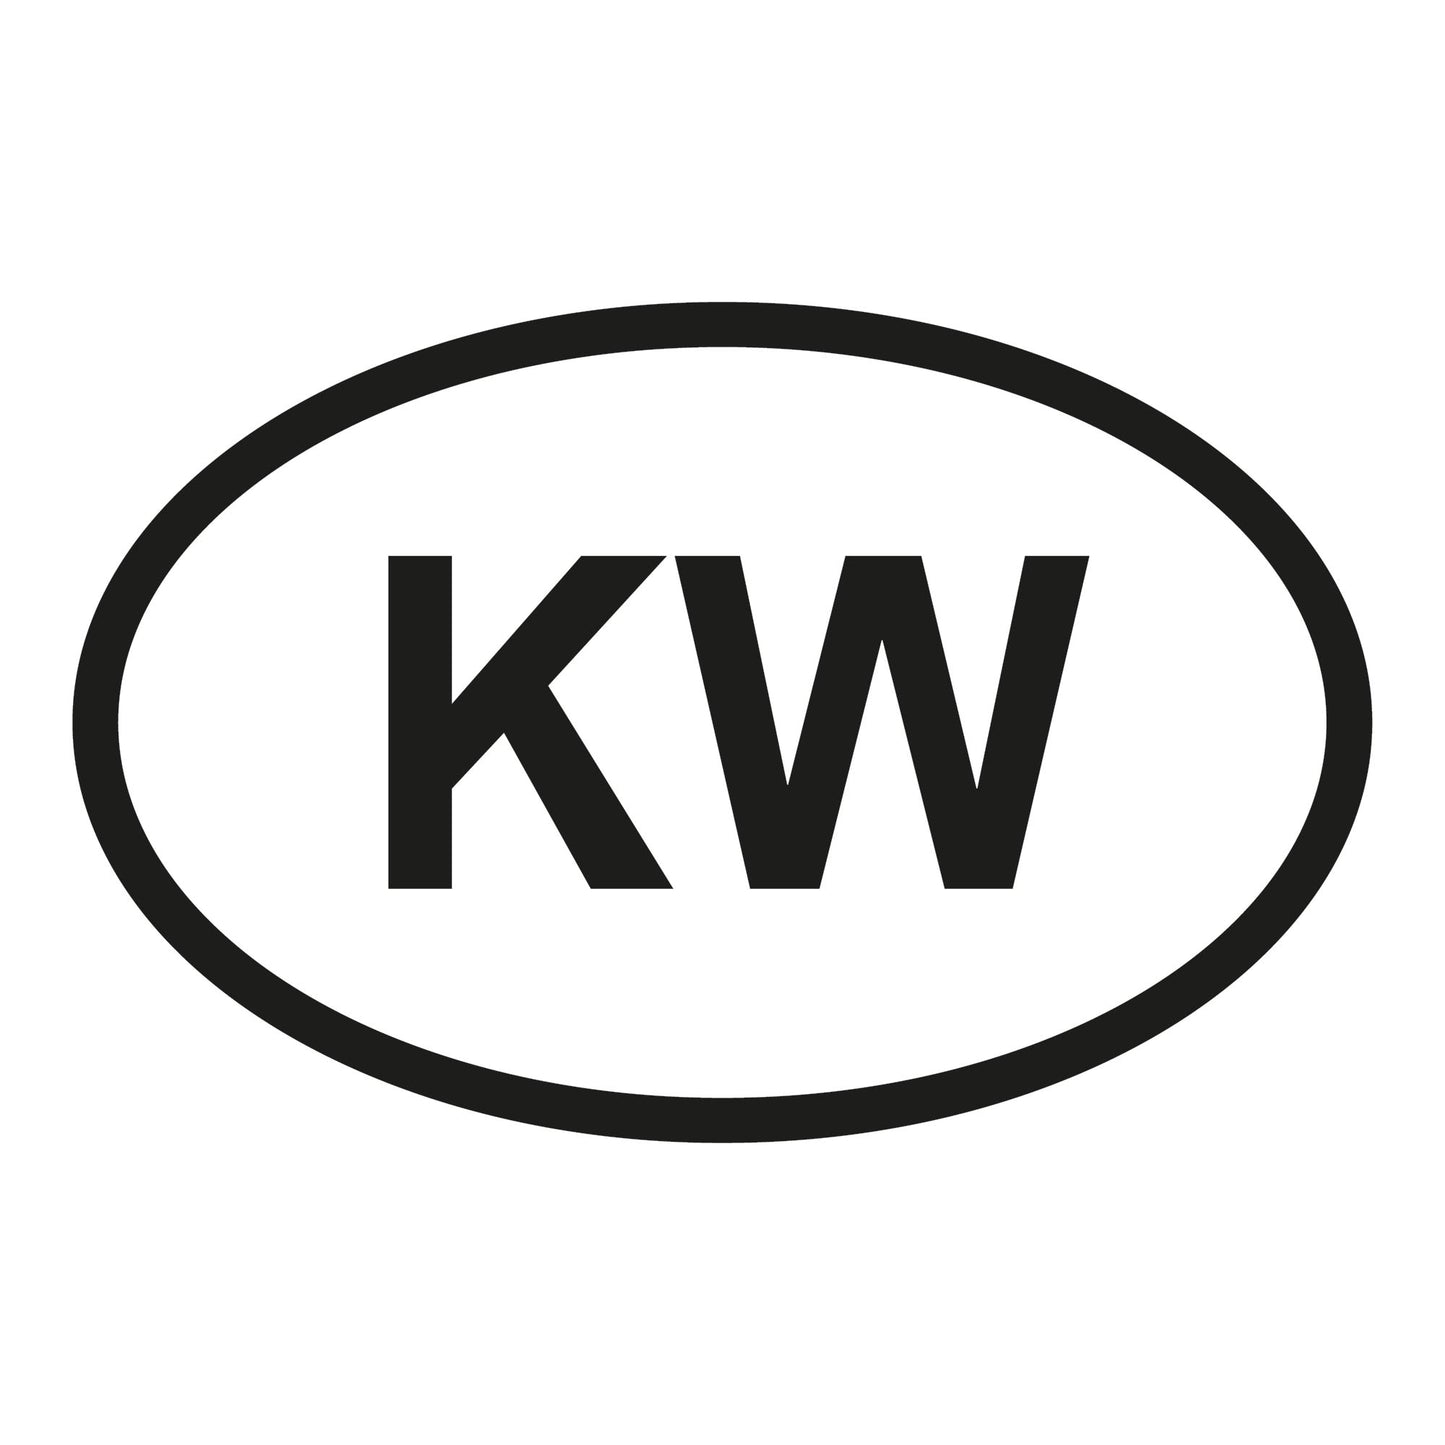 Autoaufkleber - Kuwait KW - 60x110 mm